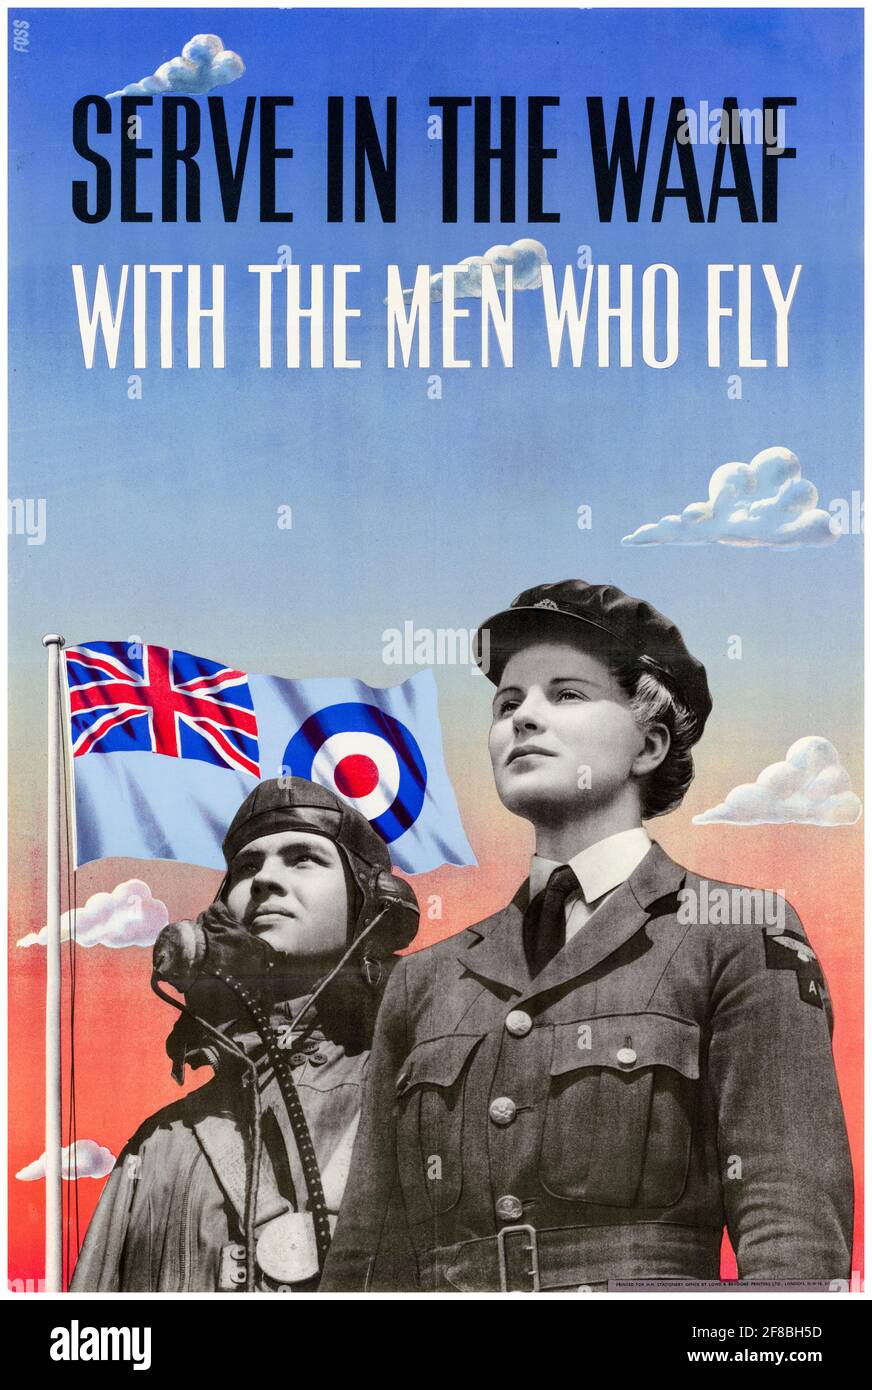 Servez dans la WAAF : avec les hommes qui voles, affiche de recrutement des femmes de la Seconde Guerre mondiale britannique, 1942-1945 Banque D'Images